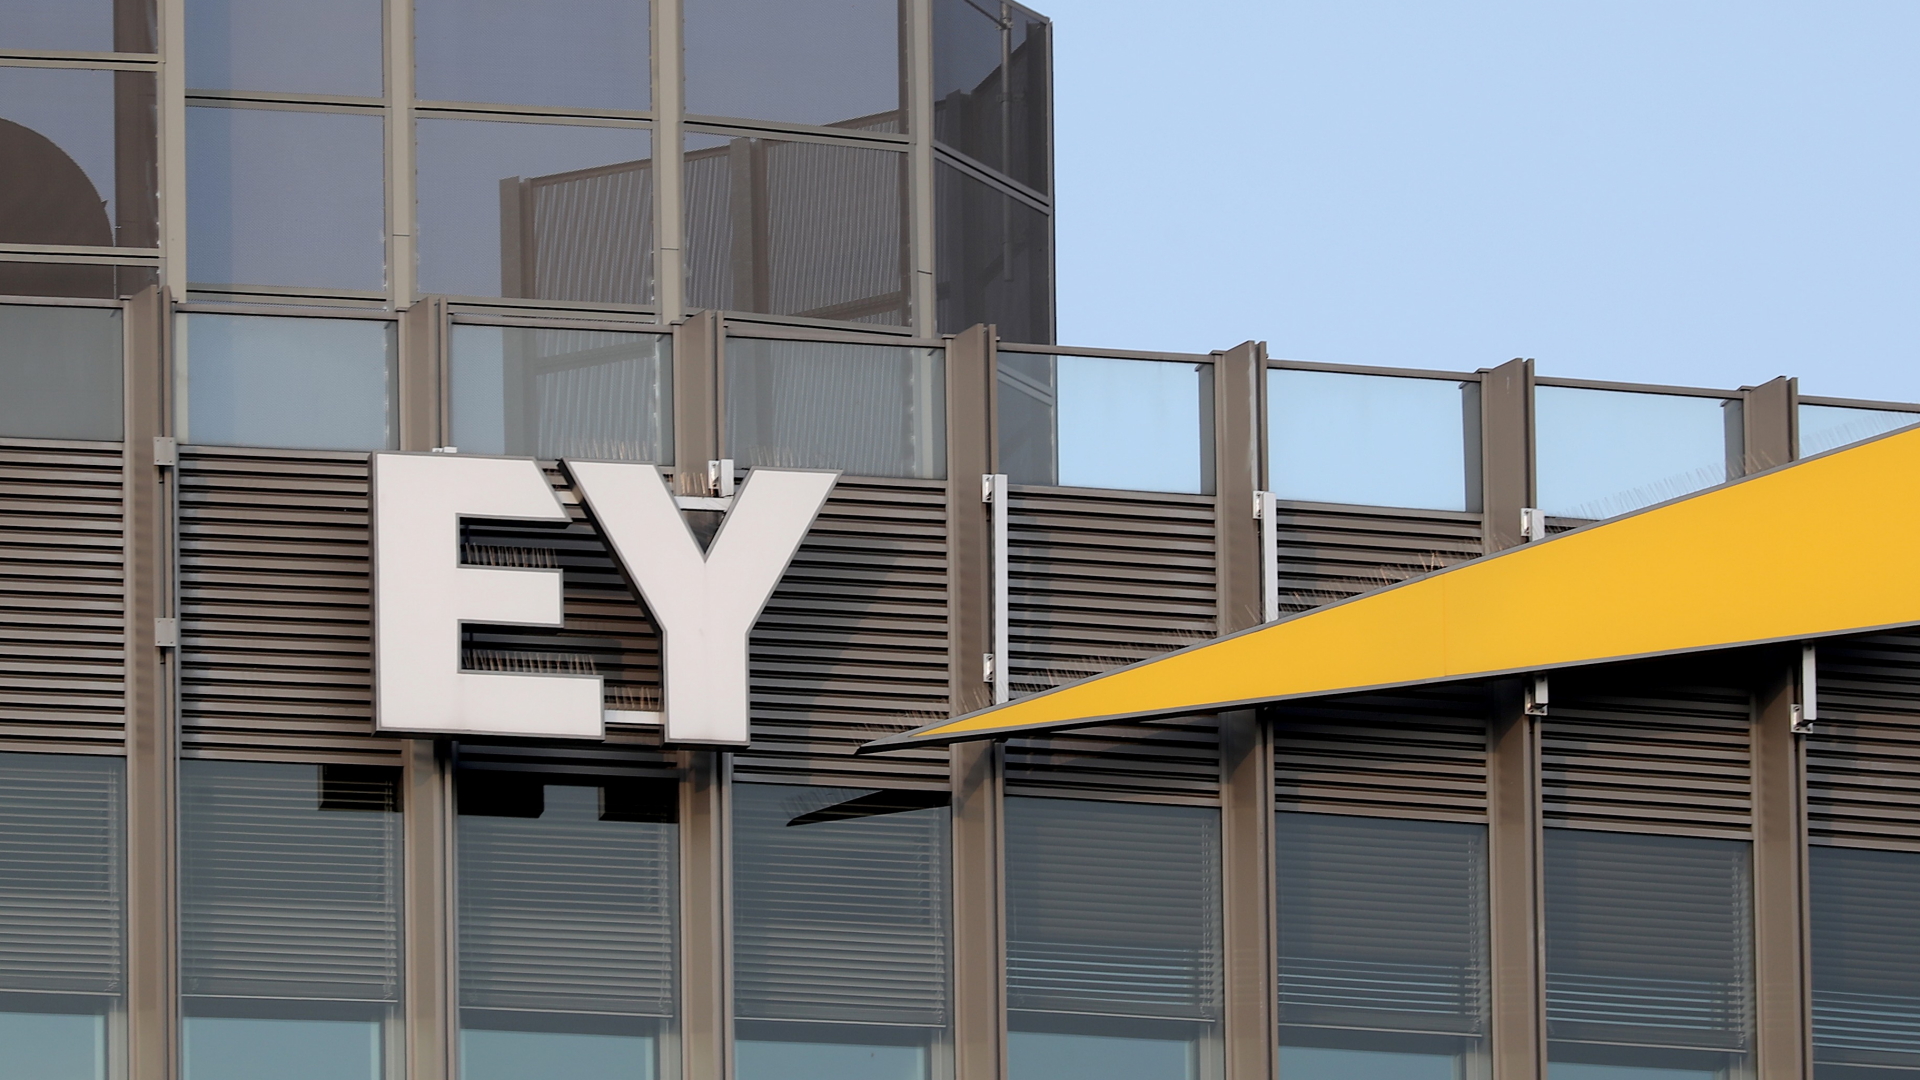 Am Bürogebäude des Wirtschaftsprüfers in Berlin hängt das Logo "EY"  | HAYOUNG JEON/EPA-EFE/Shutterstoc